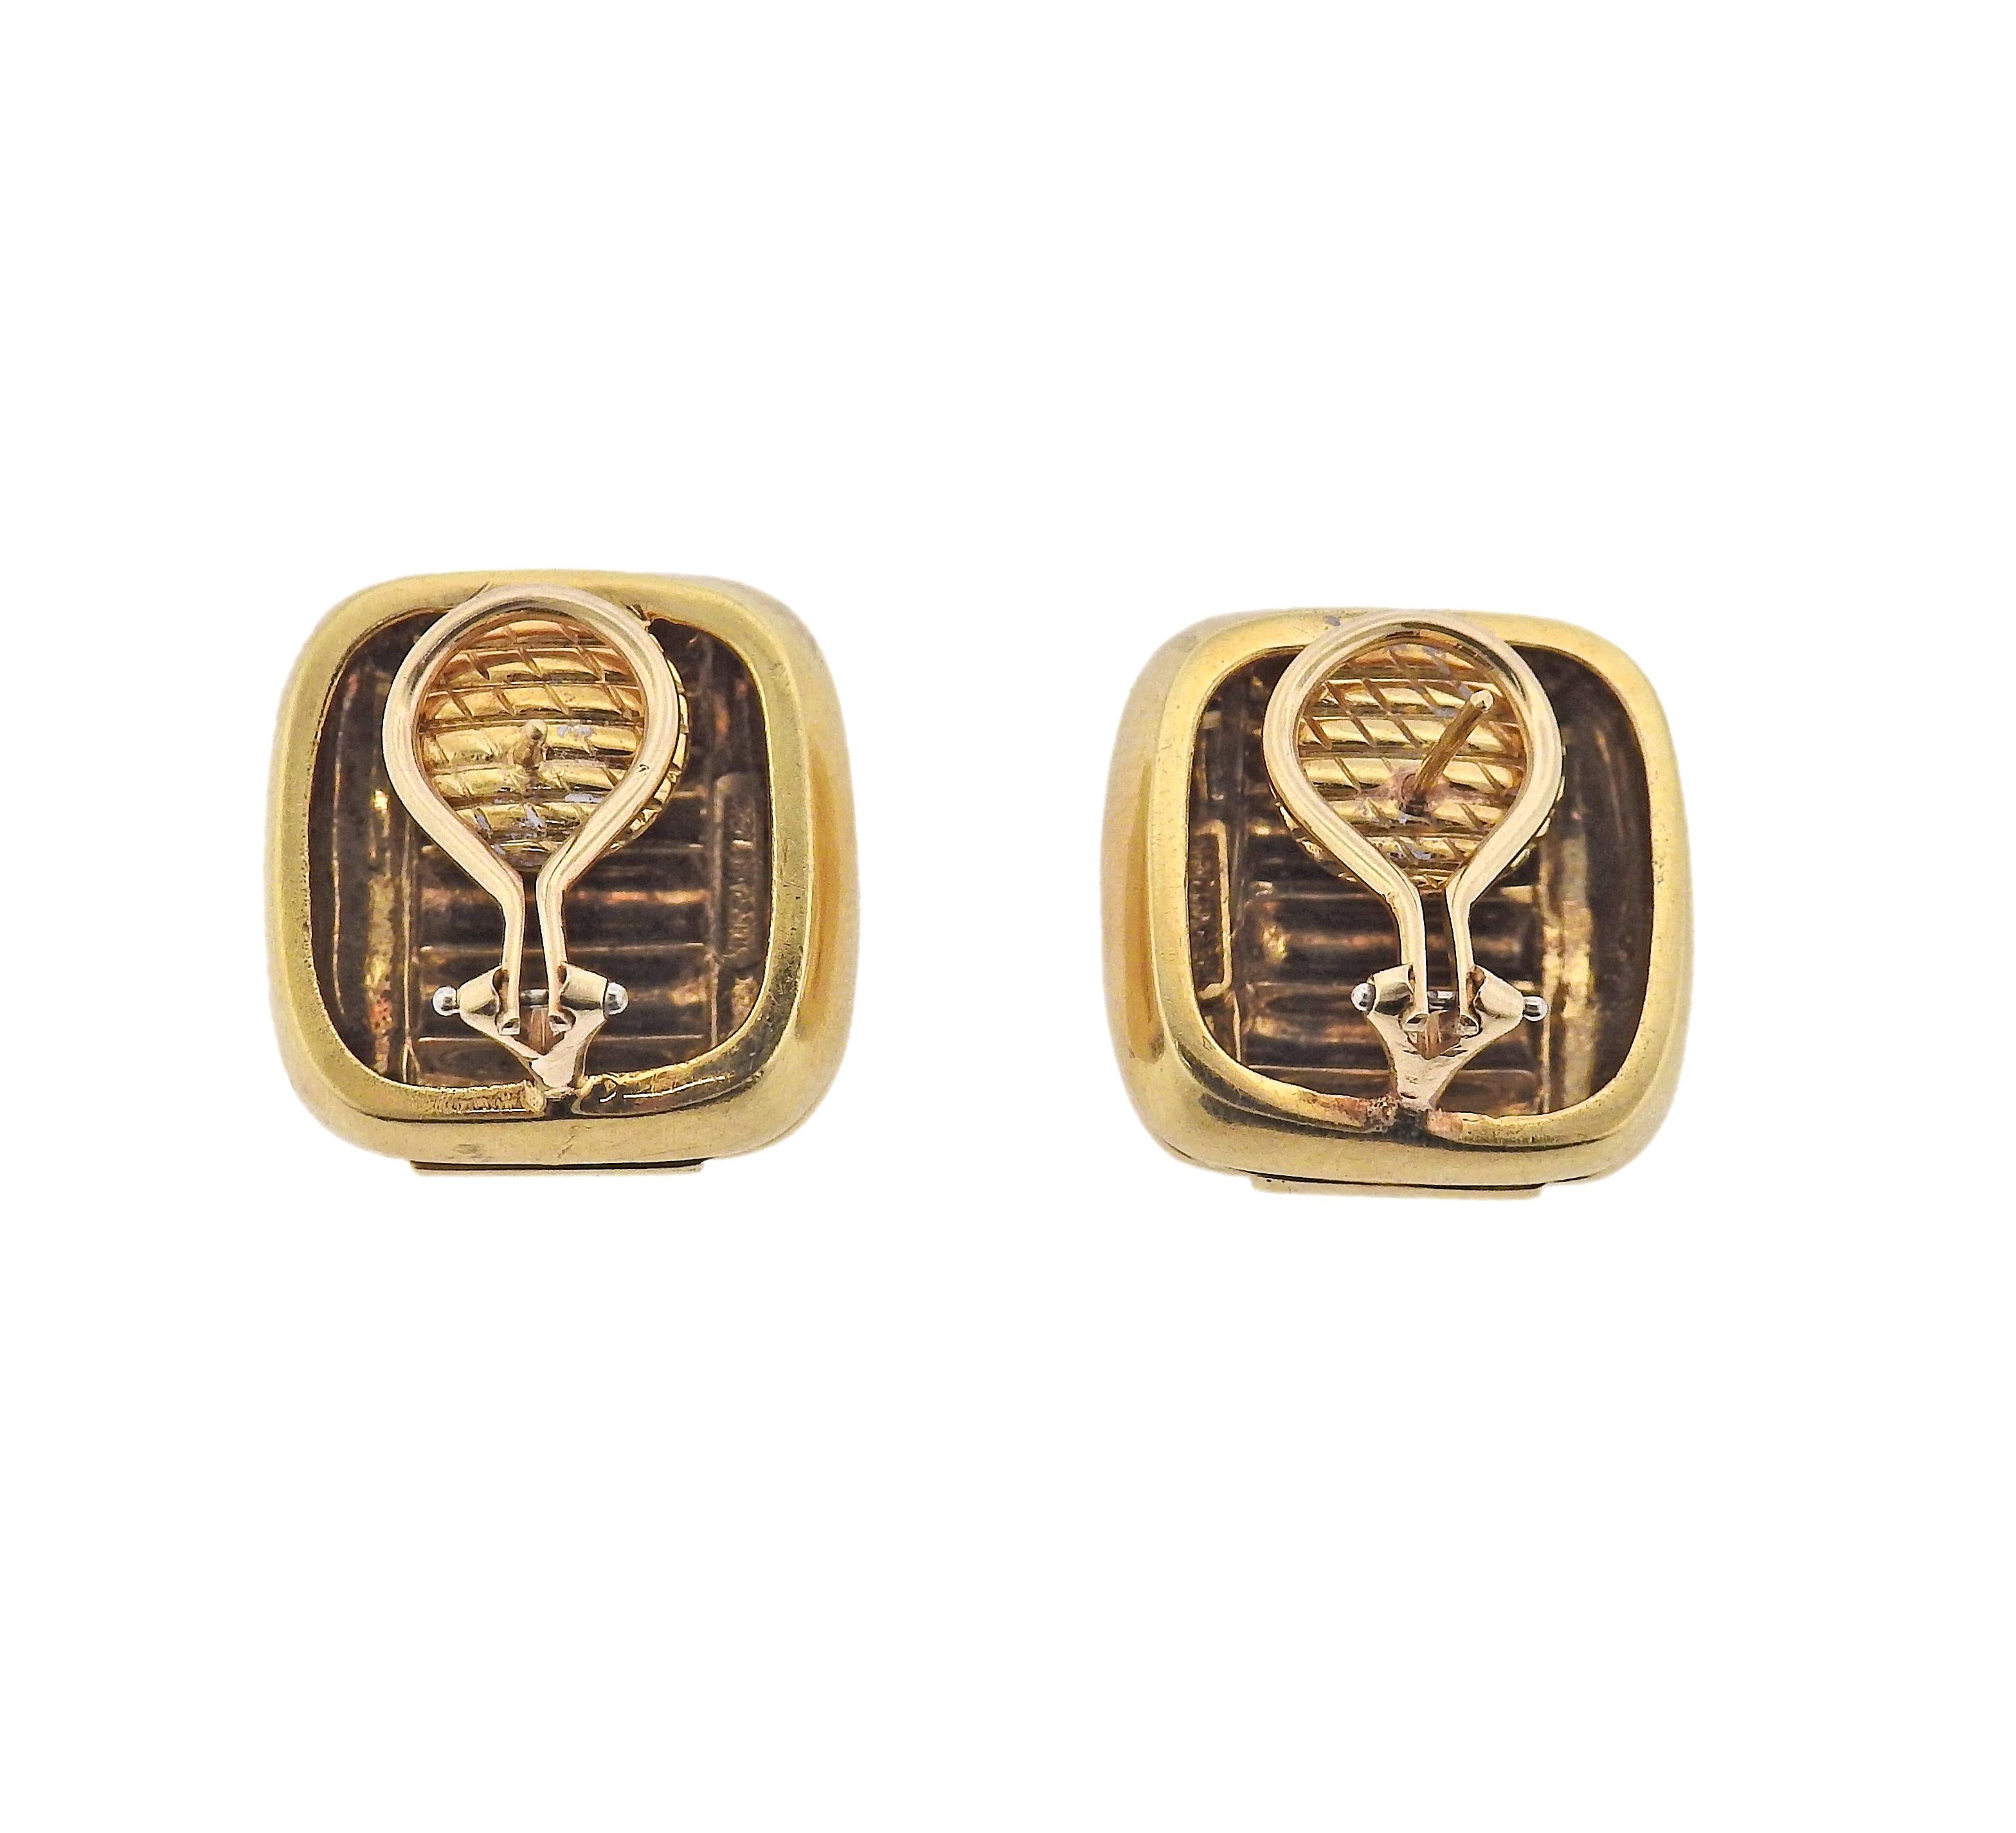 Paar Ohrringe aus 18-karätigem Gold von Tiffany & Co., circa 1980er Jahre. Die Ohrringe messen 21 mm x 21 mm. Gezeichnet: Tiffany & Co 18k. Gewicht - 26,1 Gramm.